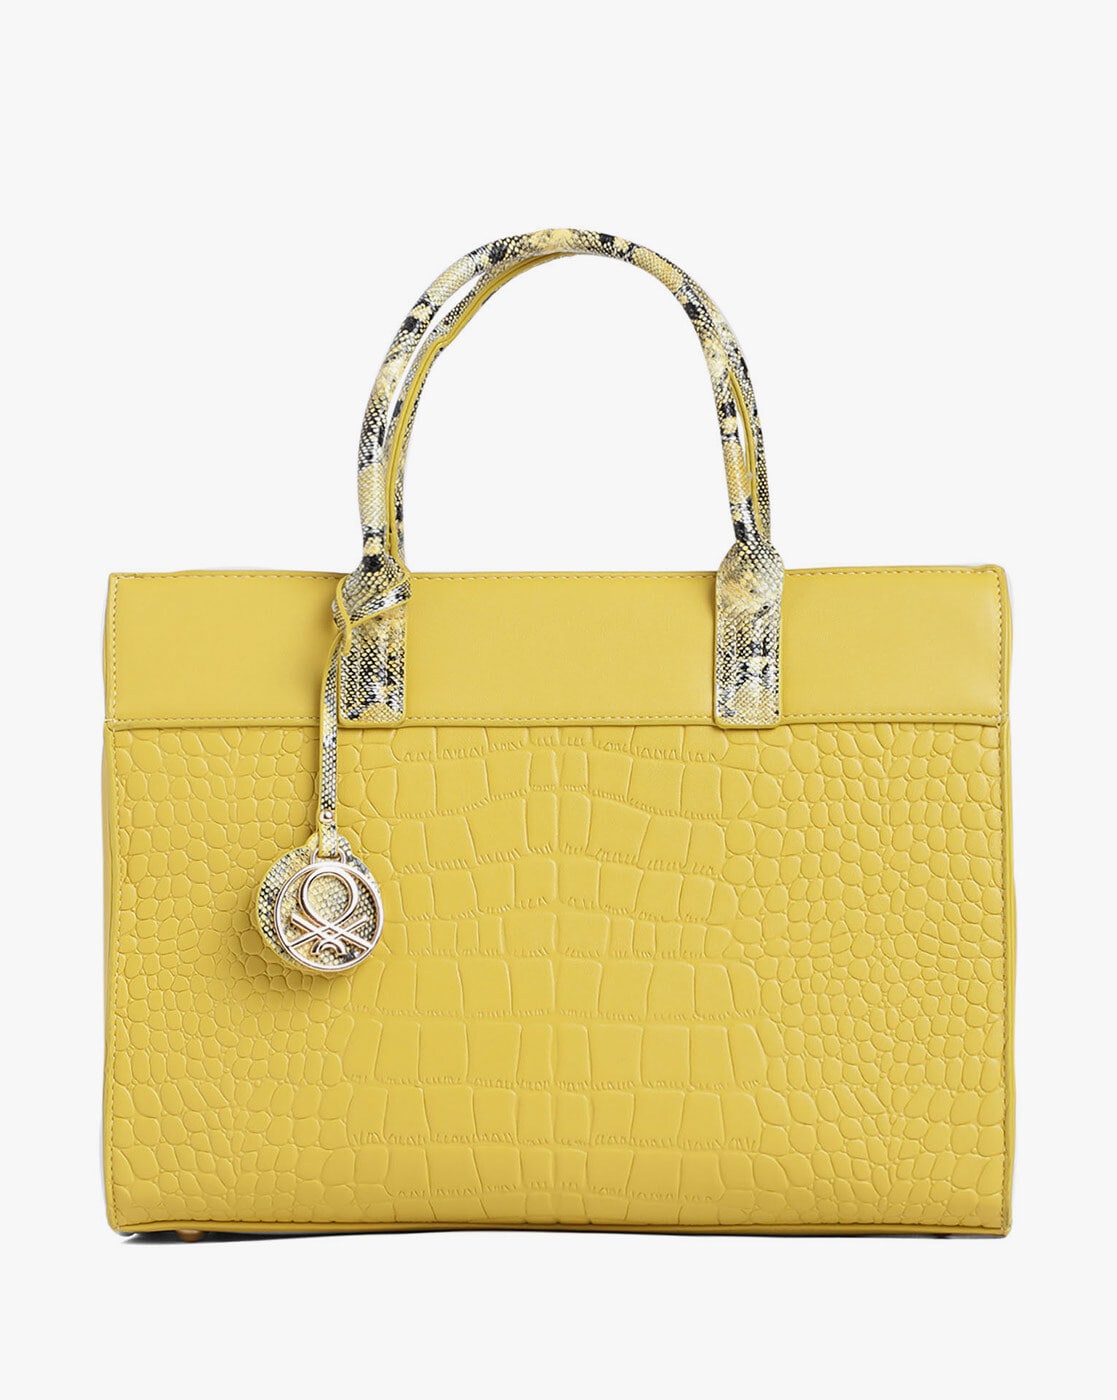 Hermès Authenticated Rodéo Pégase Bag Charm